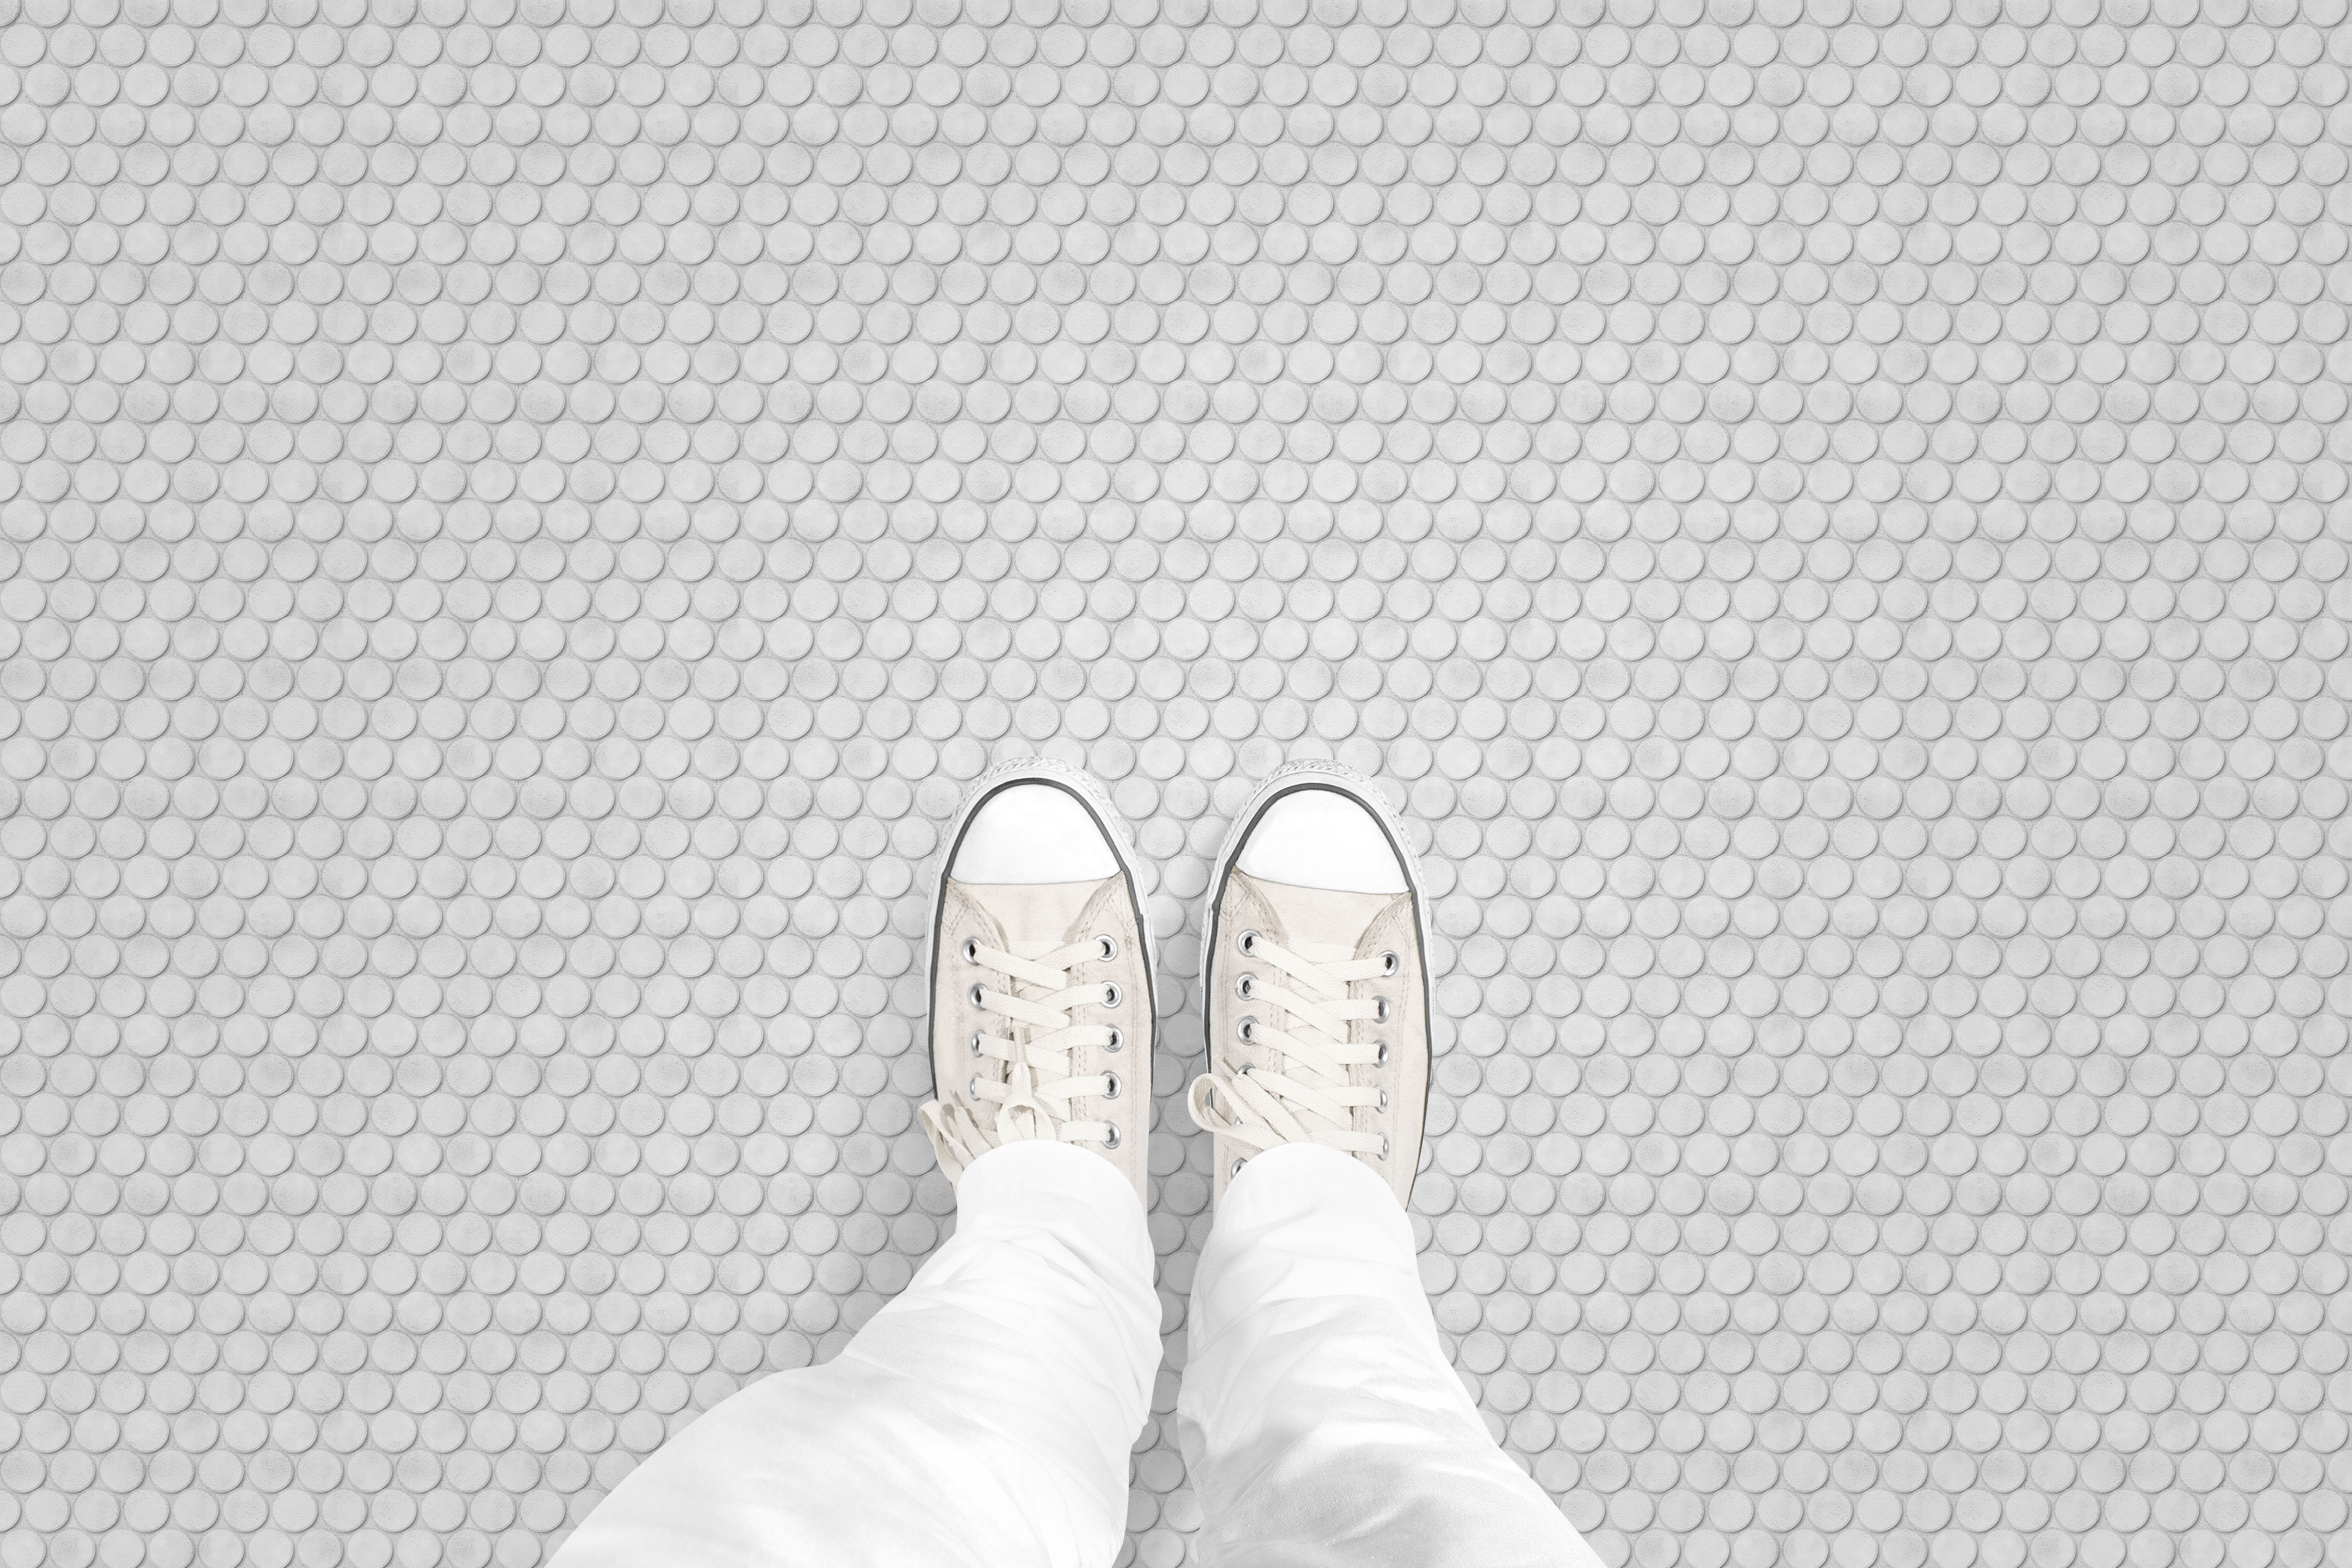 Penny Tile floor_feet_shop.gif_p2232a1.jpg